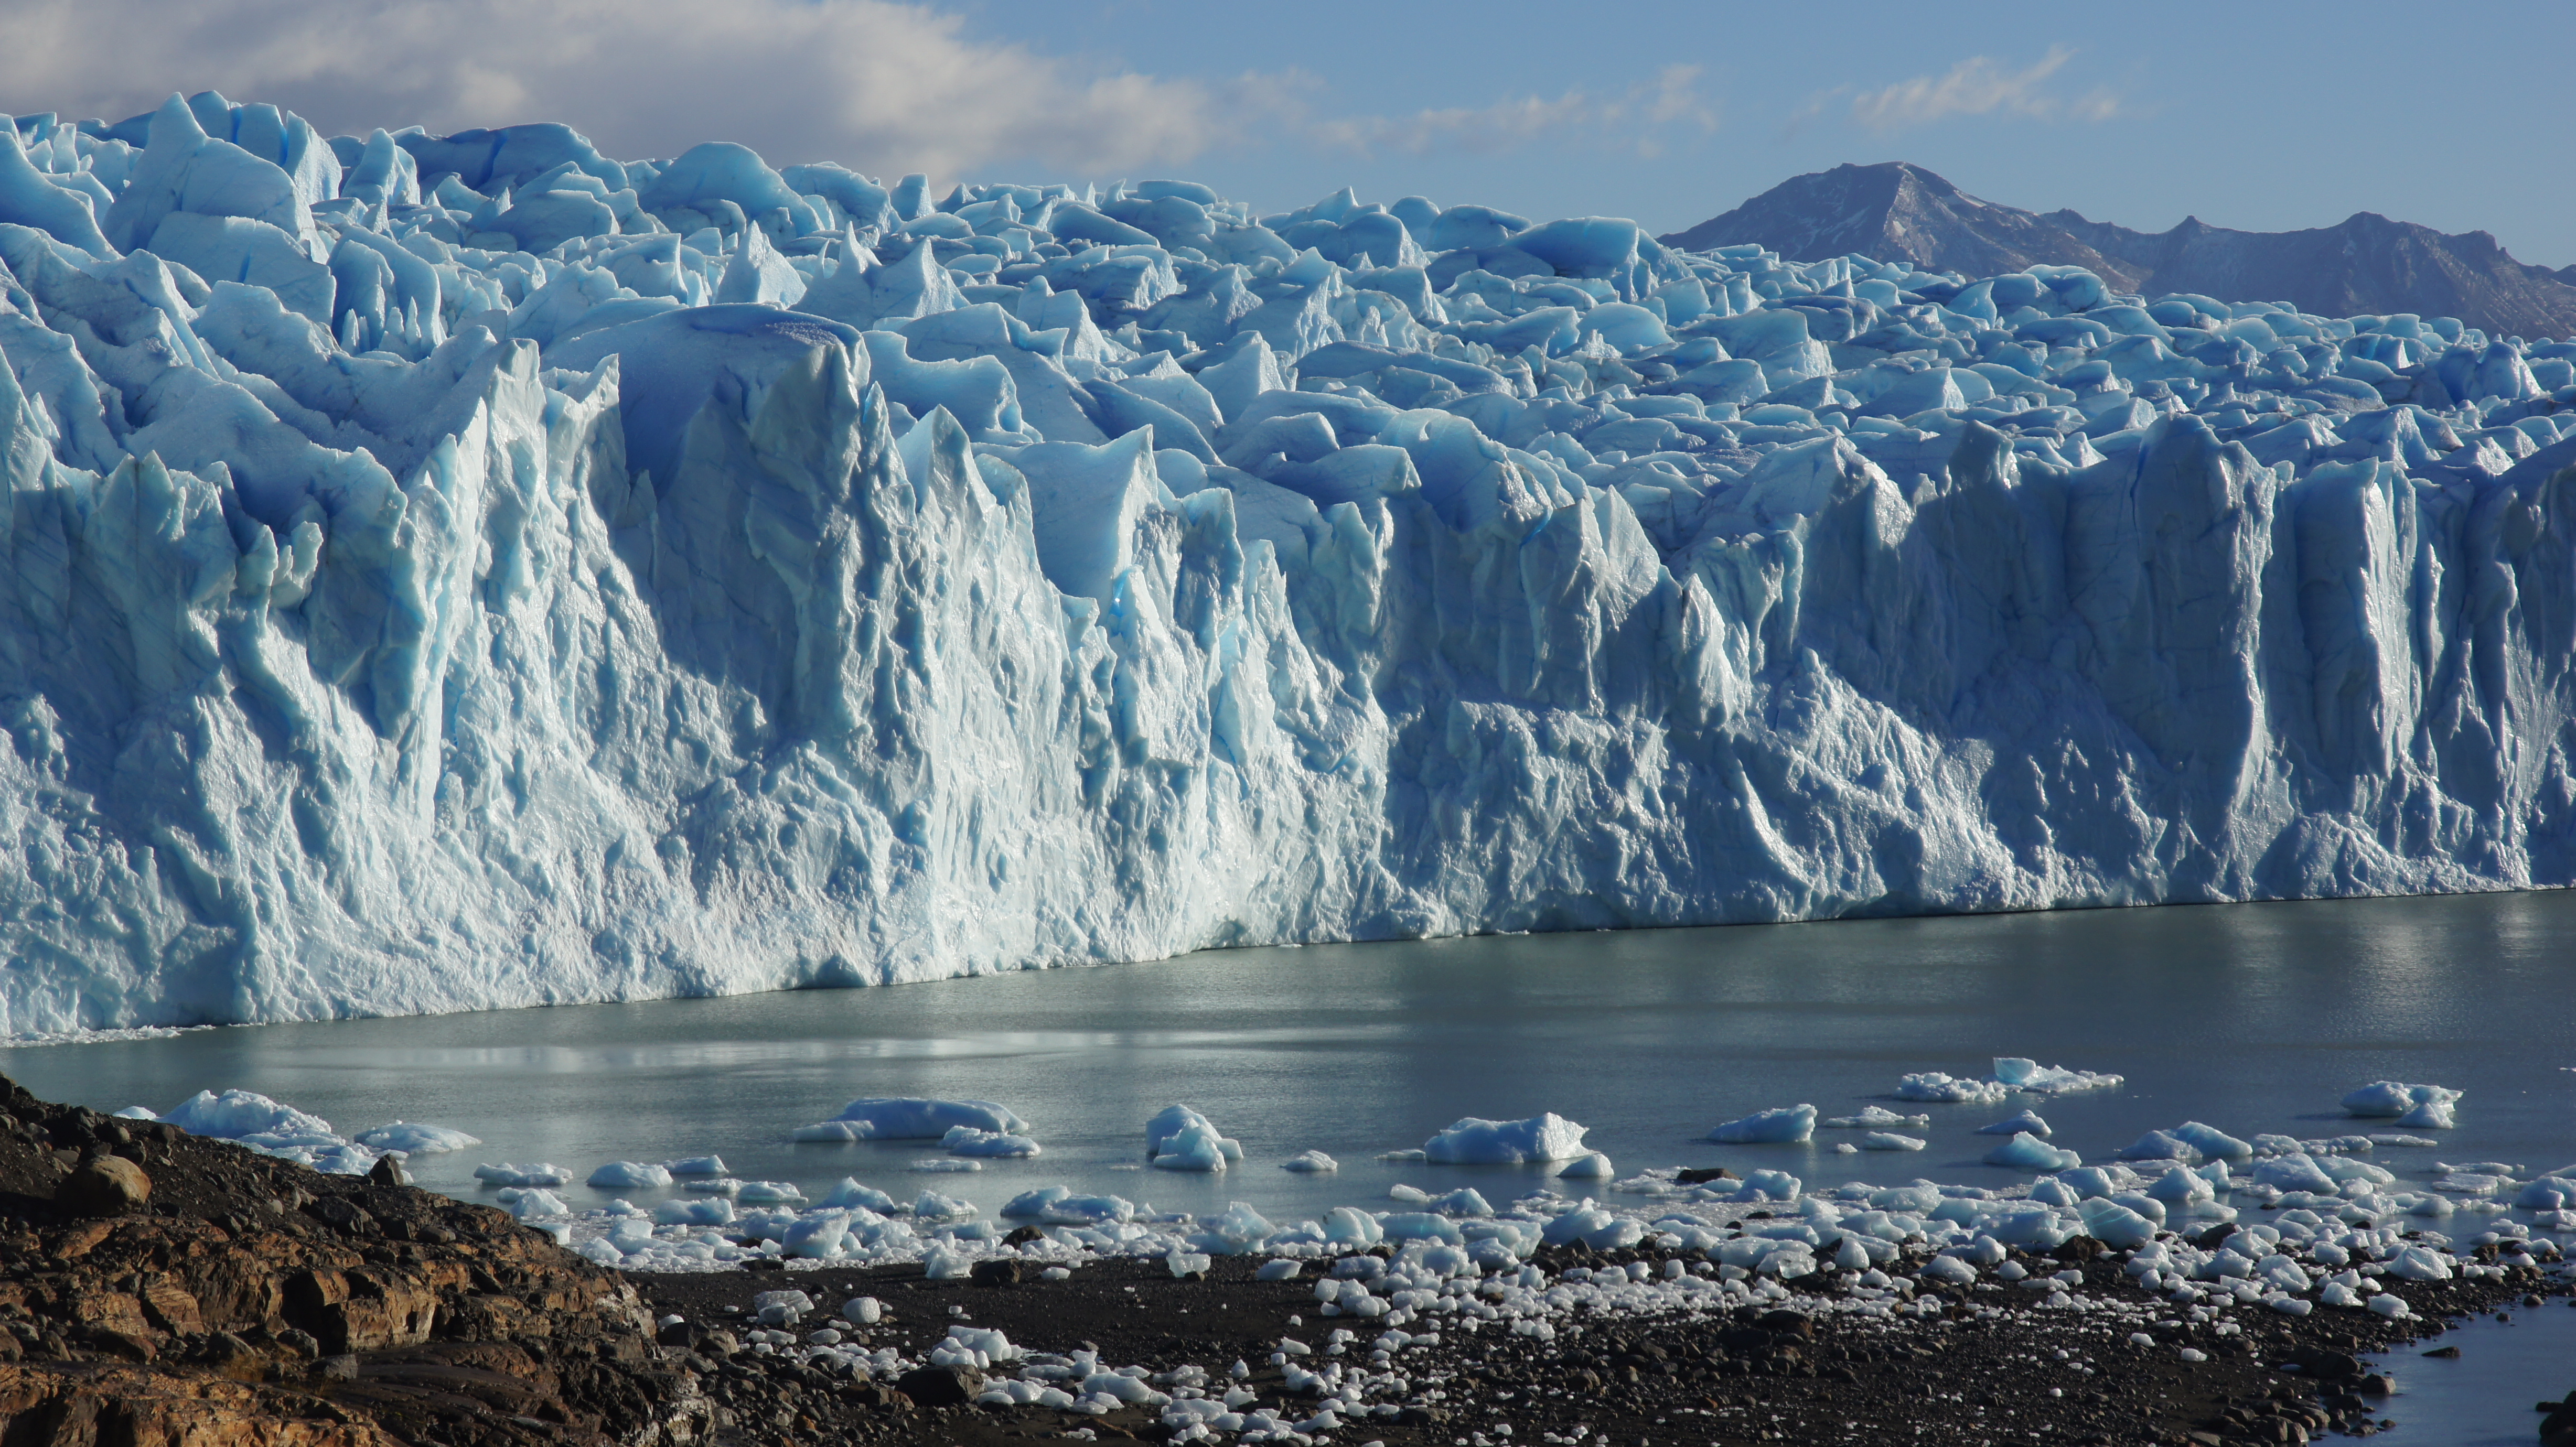 Der Perito-Moreno-Gletscher, einer der größten Gletscher im Südpatagonischen Eisfeld in Chile, mündet in den Lago Argentino. Wenn solche Auslassgletscher schrumpfen, müssen sie erst wieder eine stabile Front ausbilden. (Bild: FAU/Matthias Braun)